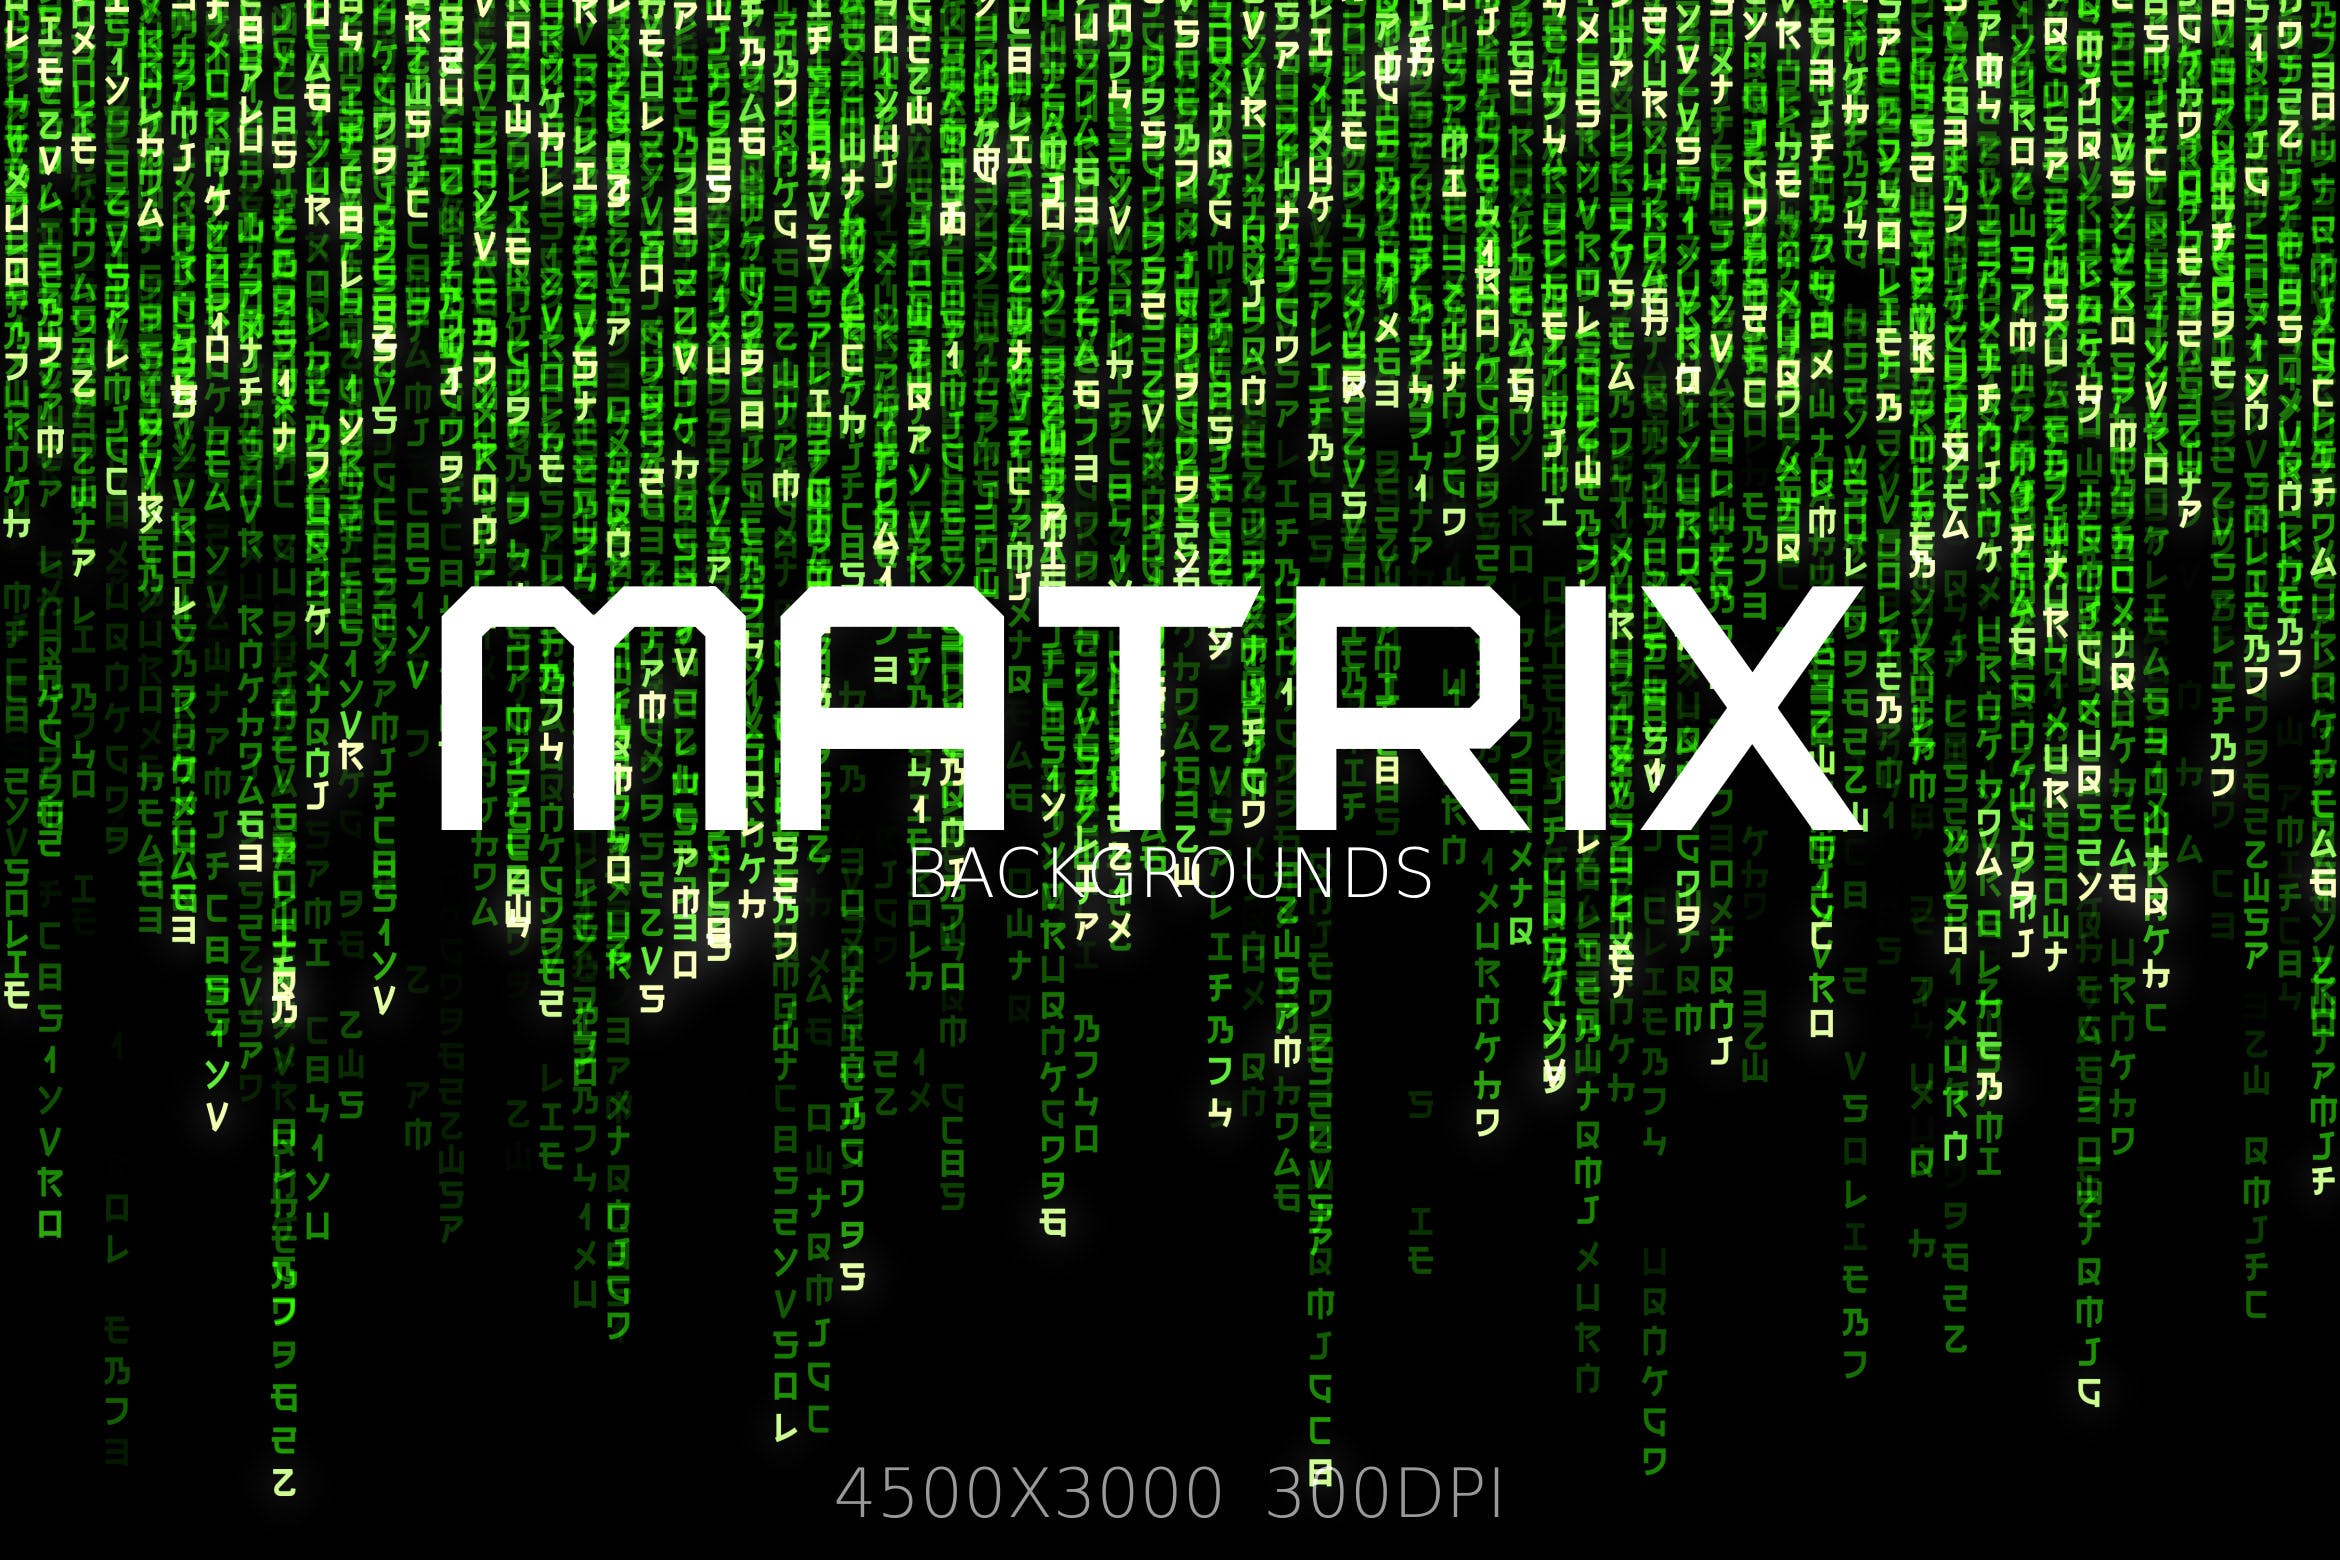 高科技信息技术矩阵背景图片素材 Matrix Backgrounds and Overlays插图